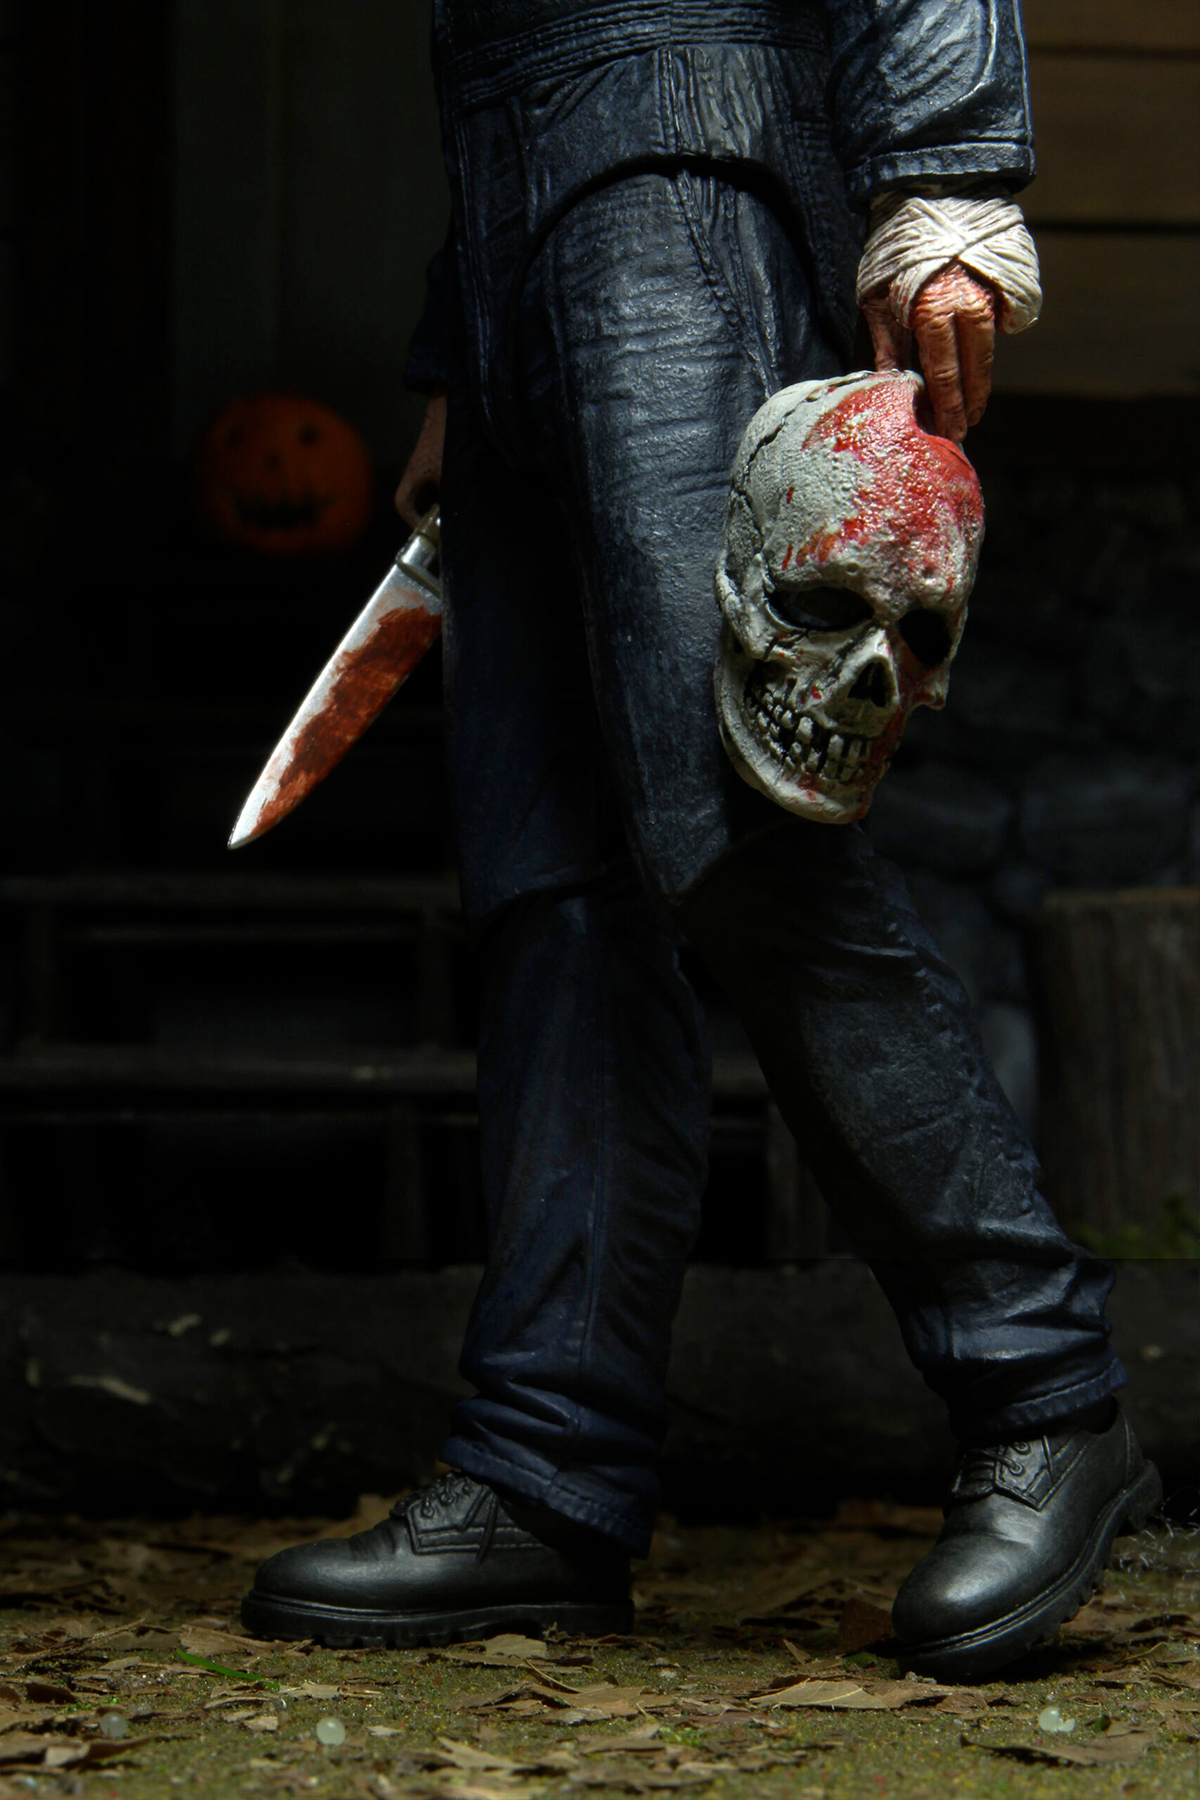 Halloween Kills Ultimate Michael Myers Figure